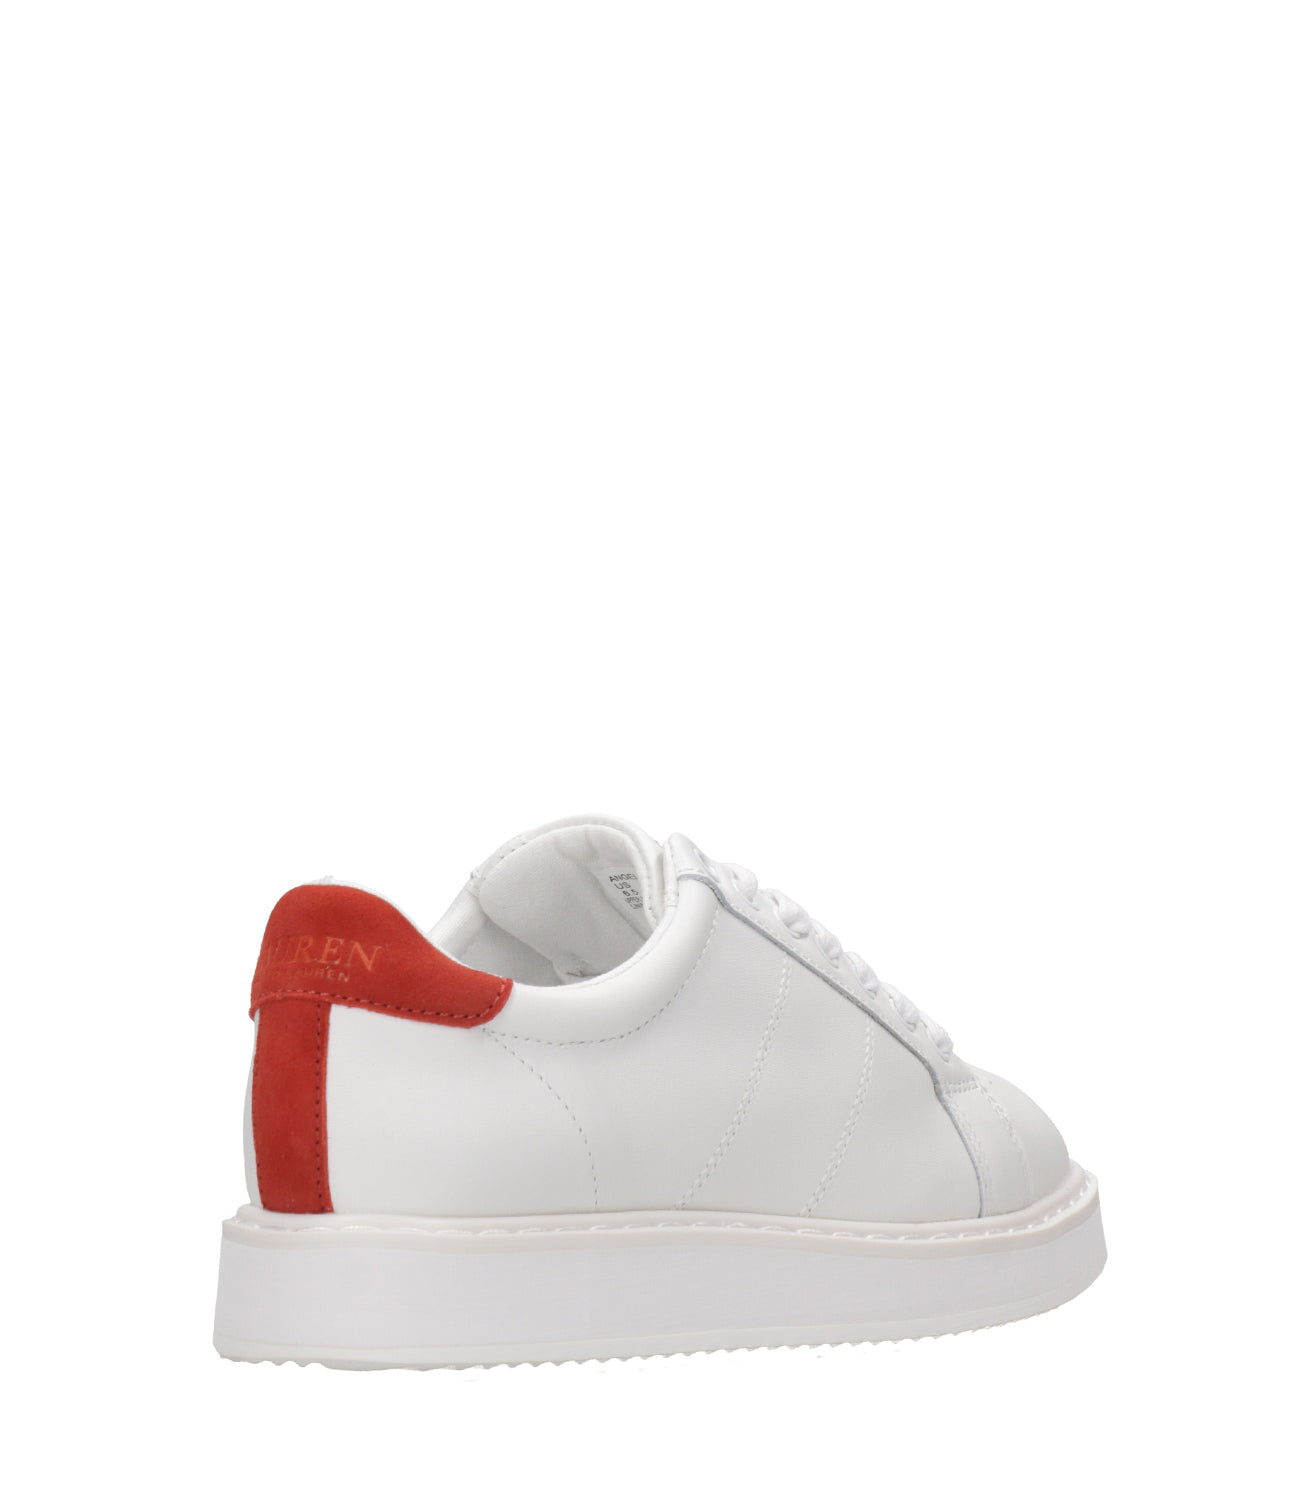 Lauren Ralph Lauren | Angeline Sneakers White and Red